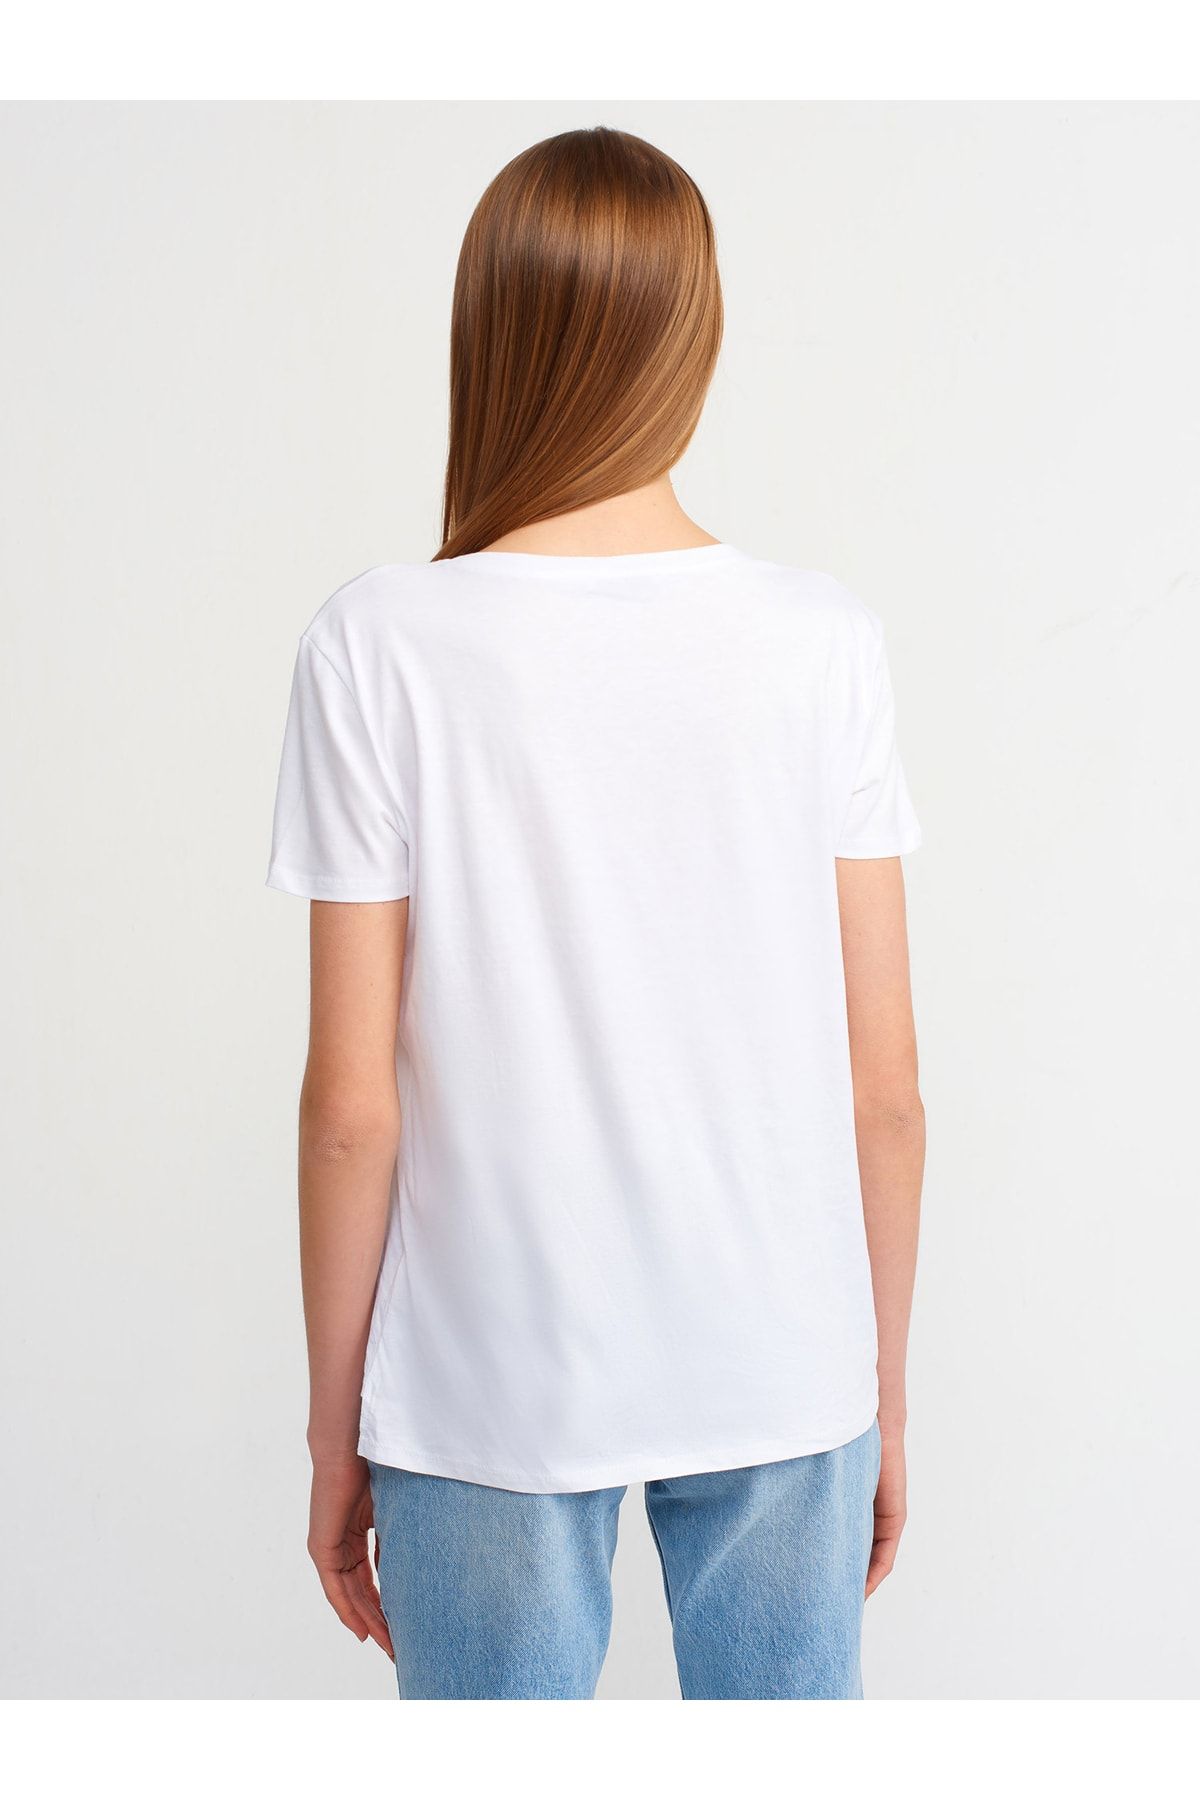 Dilvin 3470 V Yaka Basic T-shirt-beyaz